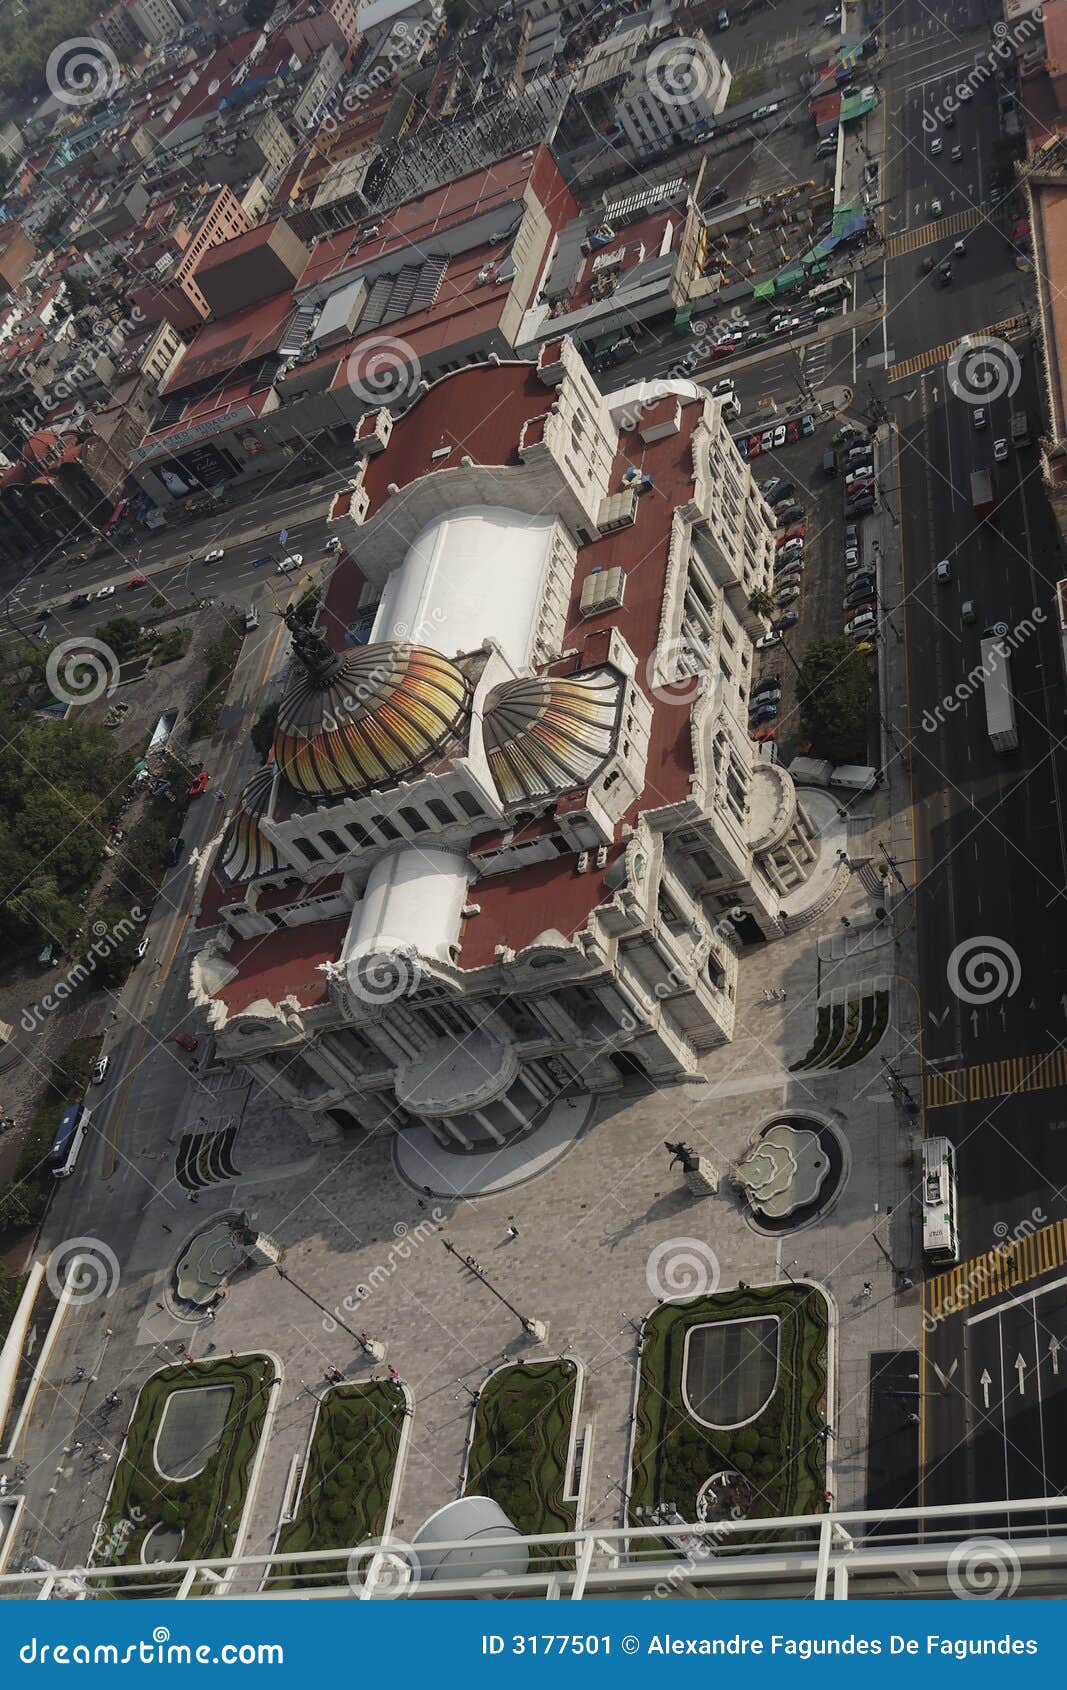 palacio de bellas artes mexico city